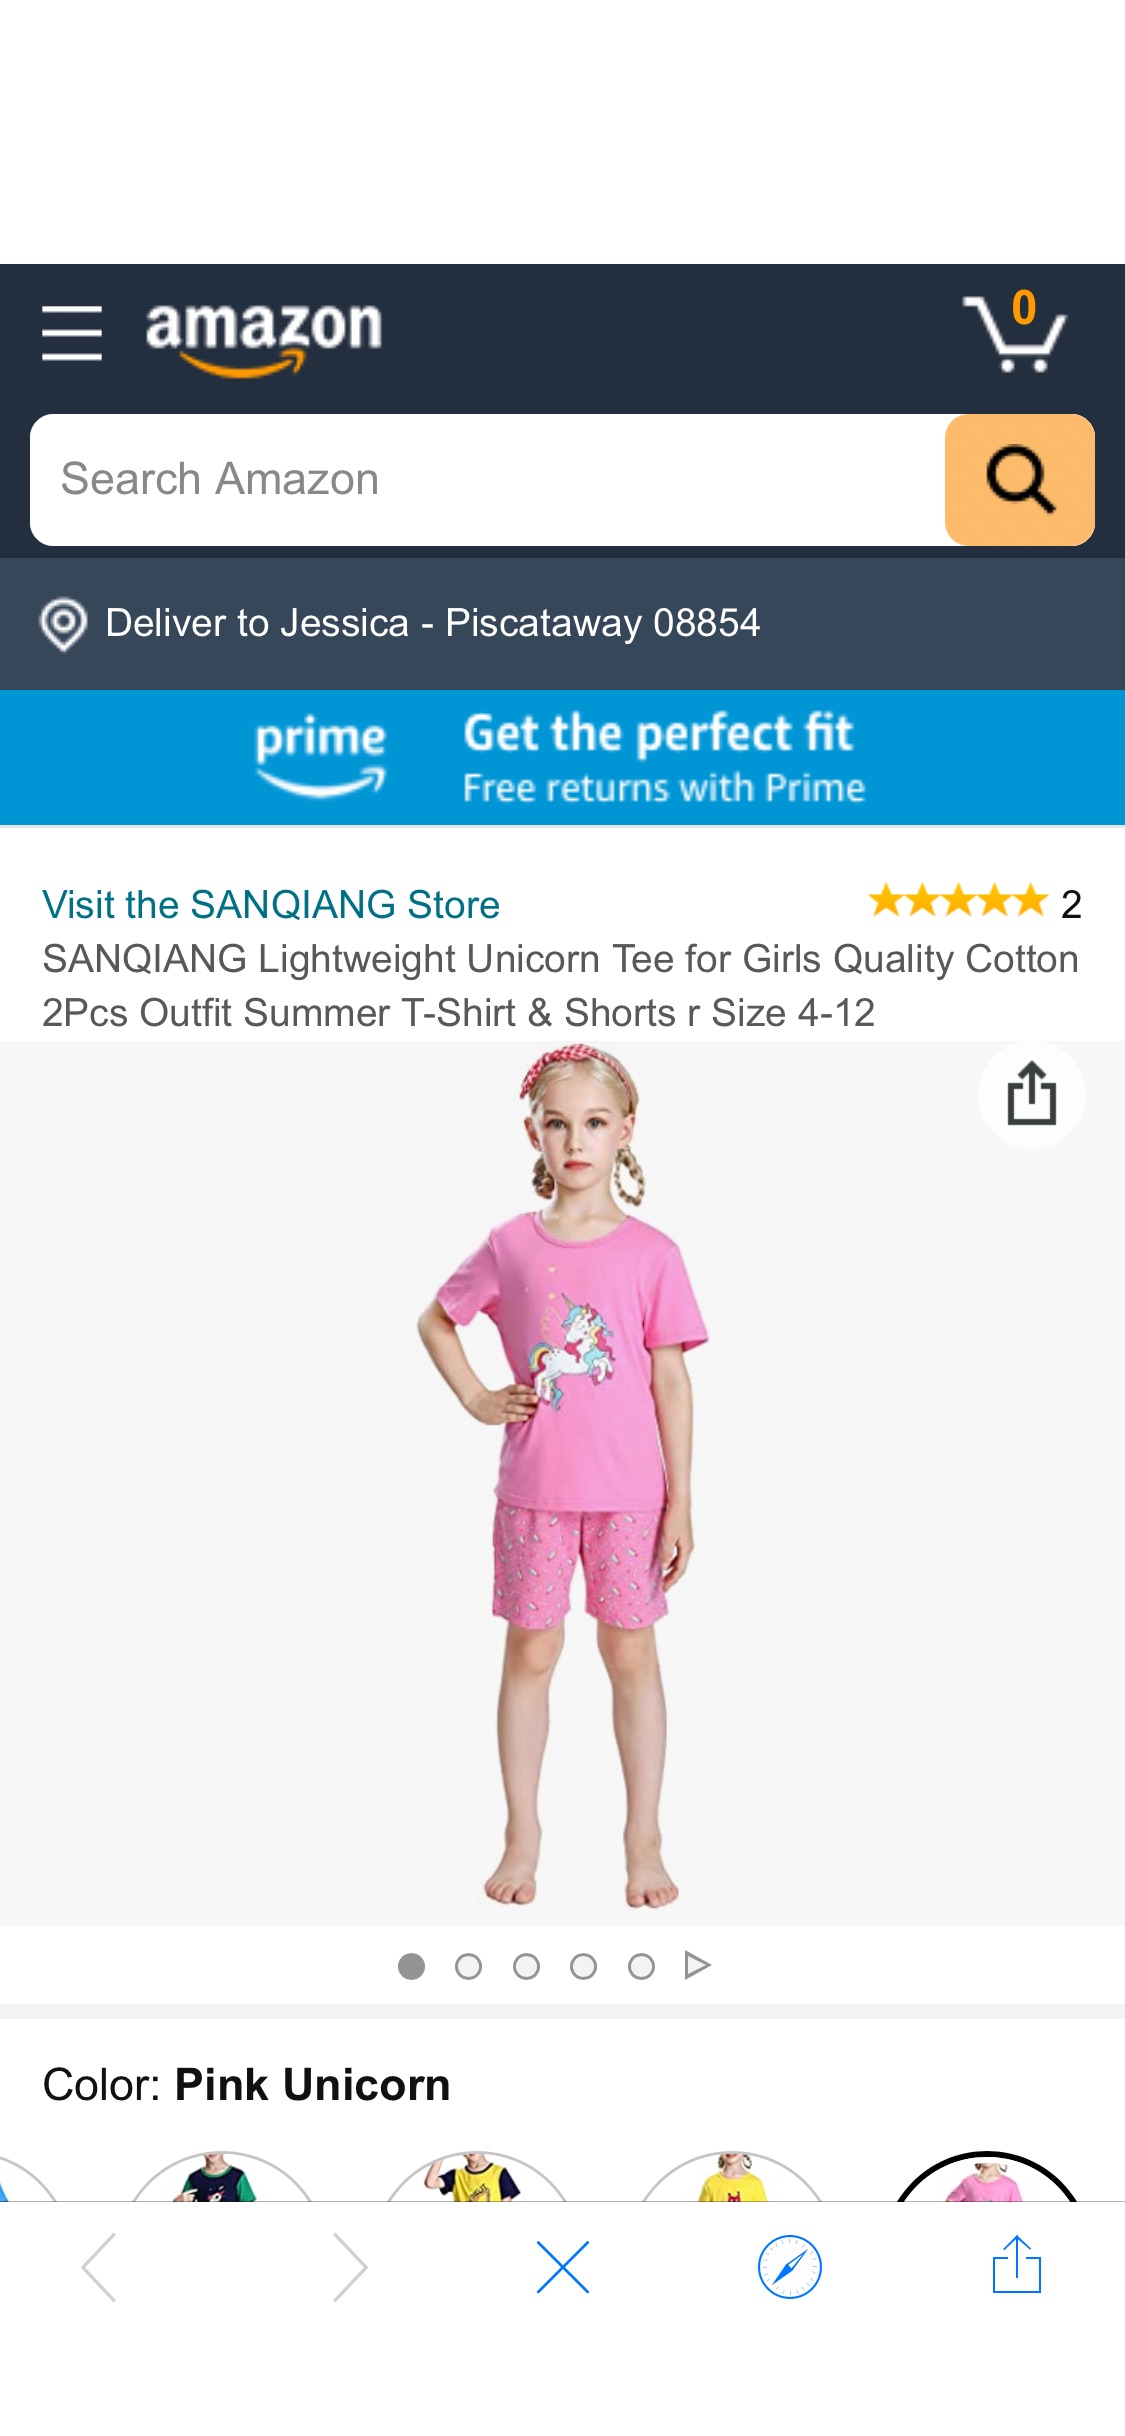 三枪全棉短款儿童睡衣 Amazon.com: SANQIANG Lightweight Unicorn Tee for Girls Quality Cotton 2Pcs Outfit Summer T-Shirt & Shorts r Size 4-12: Clothing